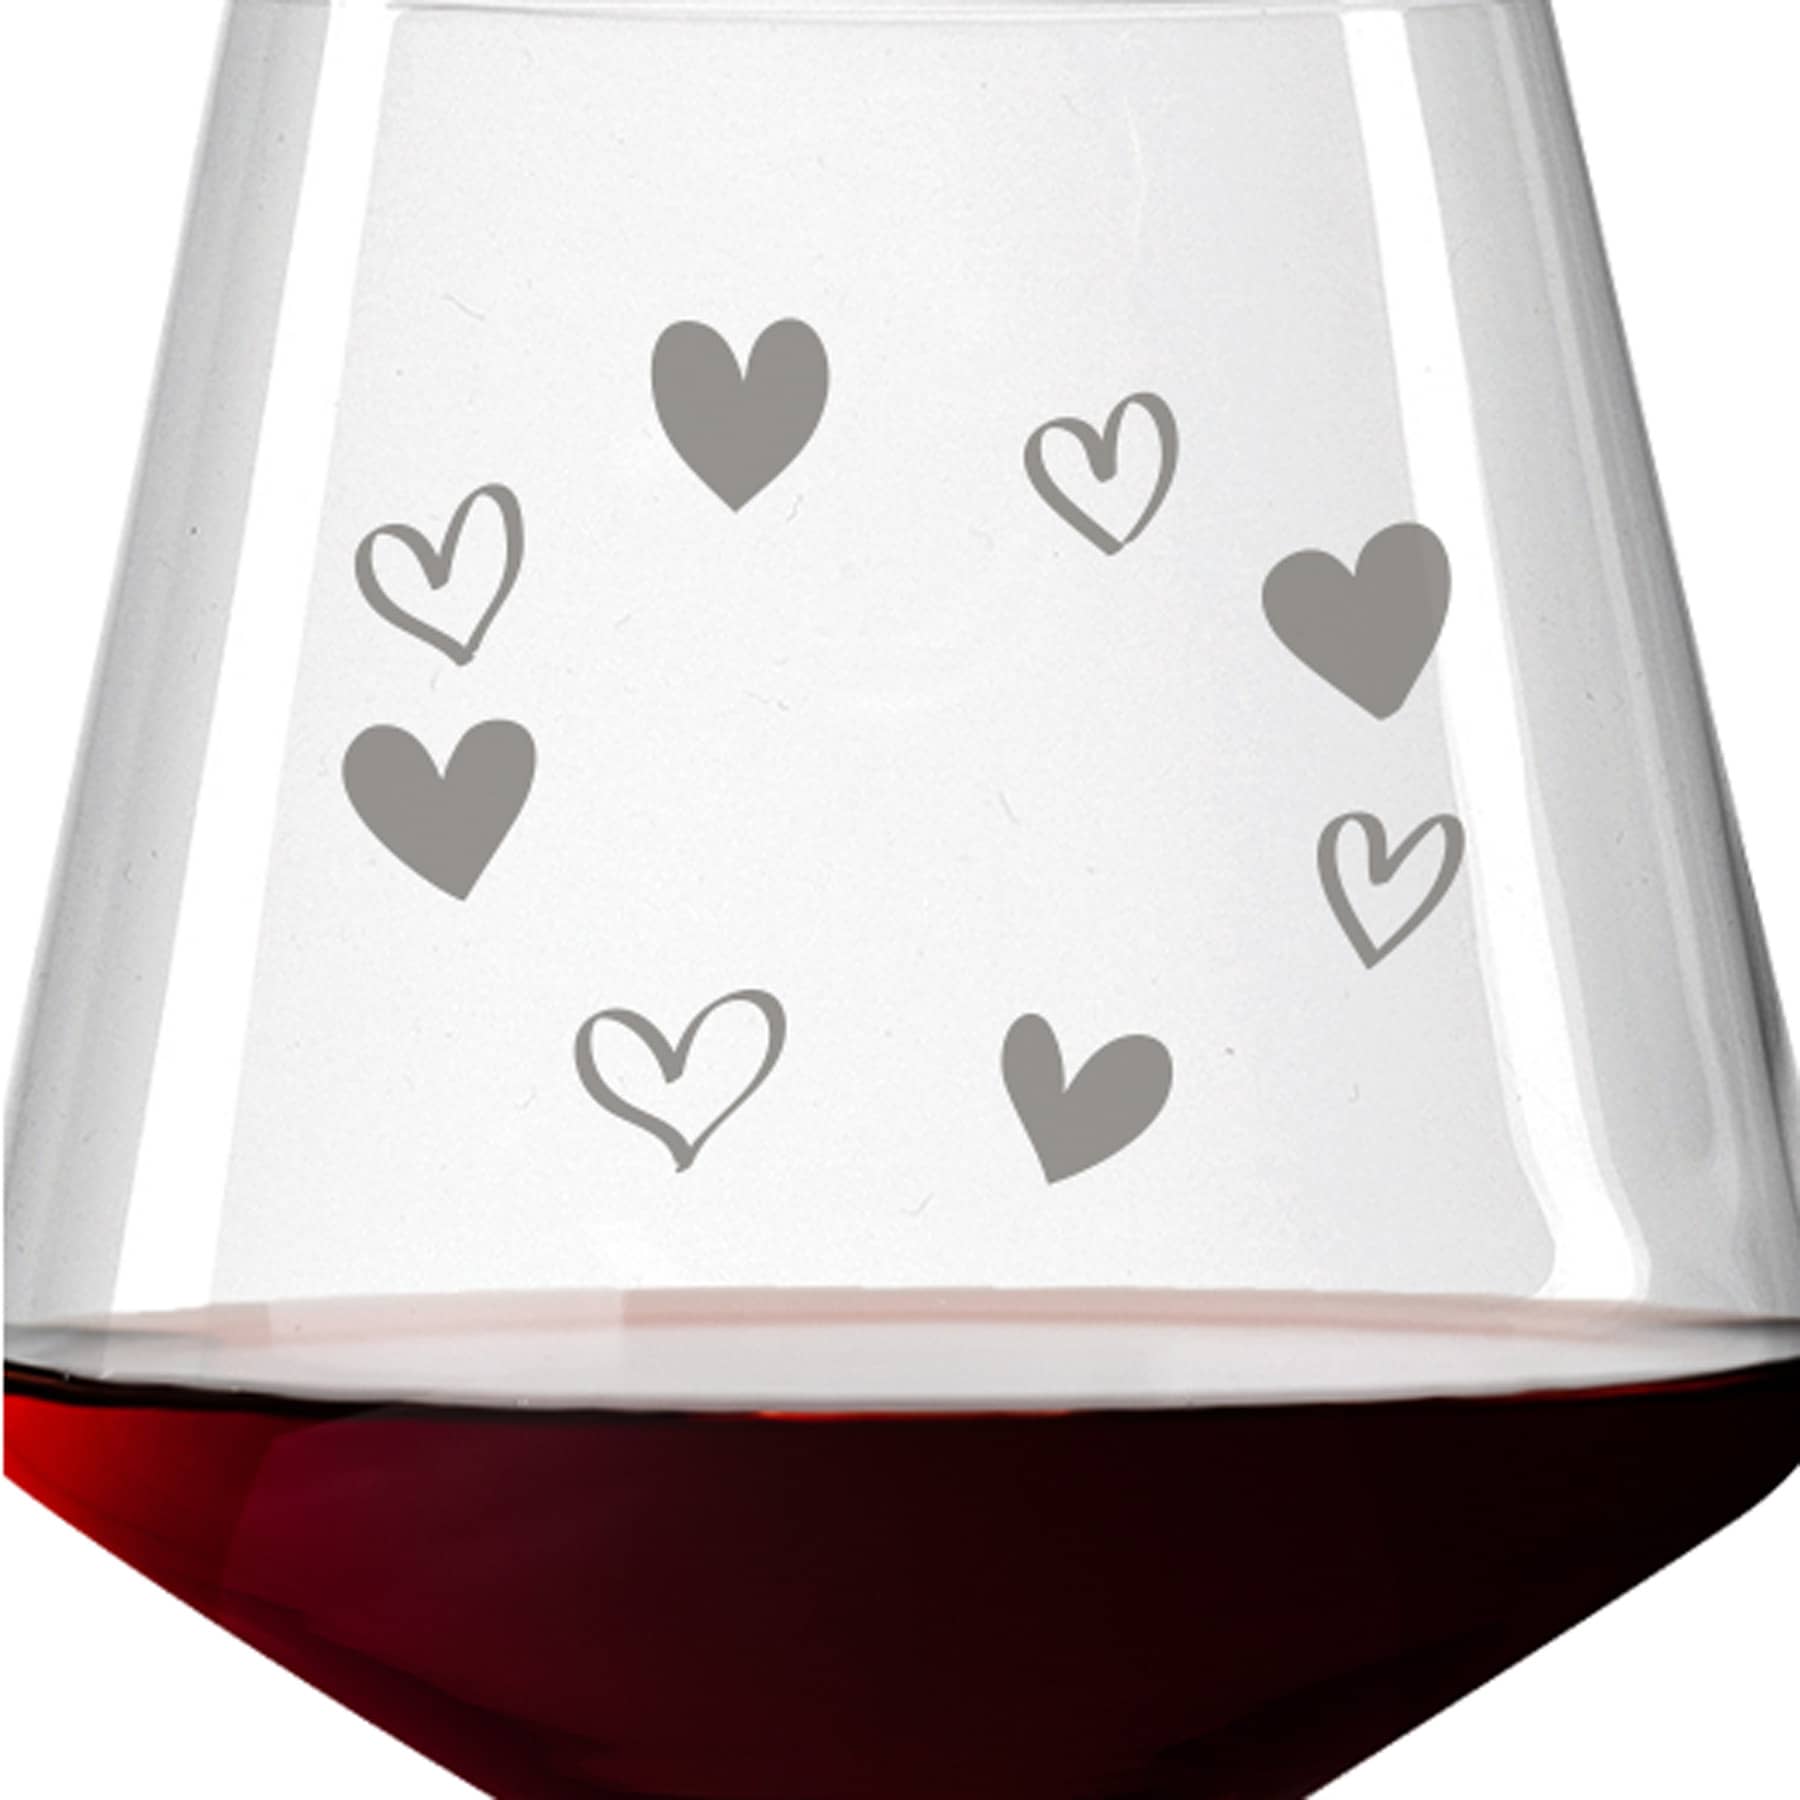 Leonardo Burgunderglas Rotweinglas PUCCINI 730ml mit Namen oder Wunschtext graviert (Herzkreis)